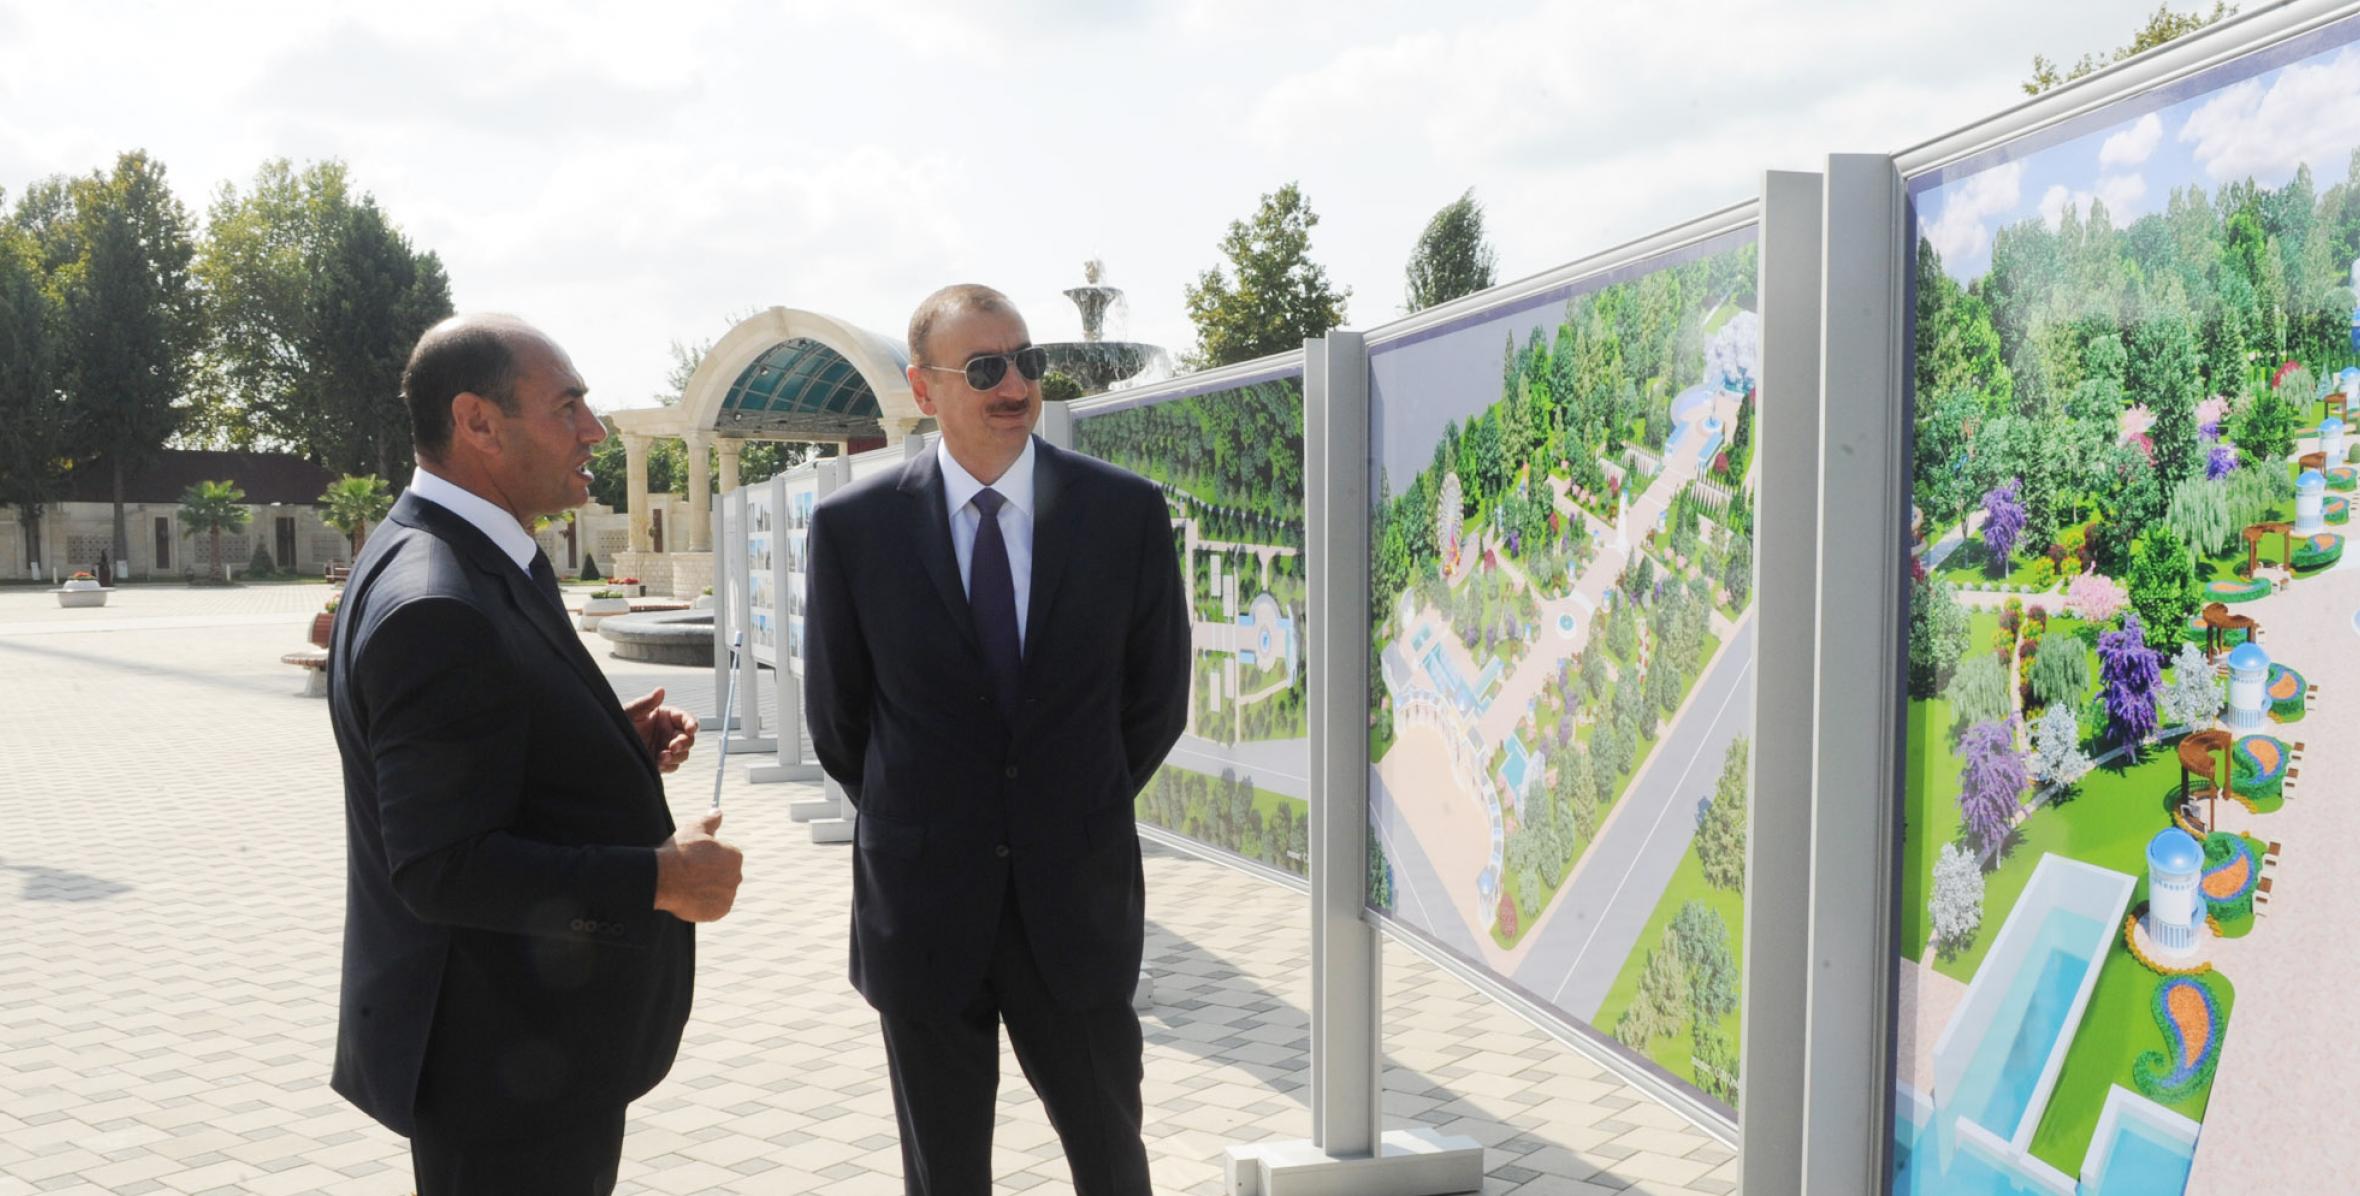 İlham Əliyev Bərdədə əsaslı surətdə yenidən qurulmuş mərkəzi istirahət parkı ilə tanış olmuşdur